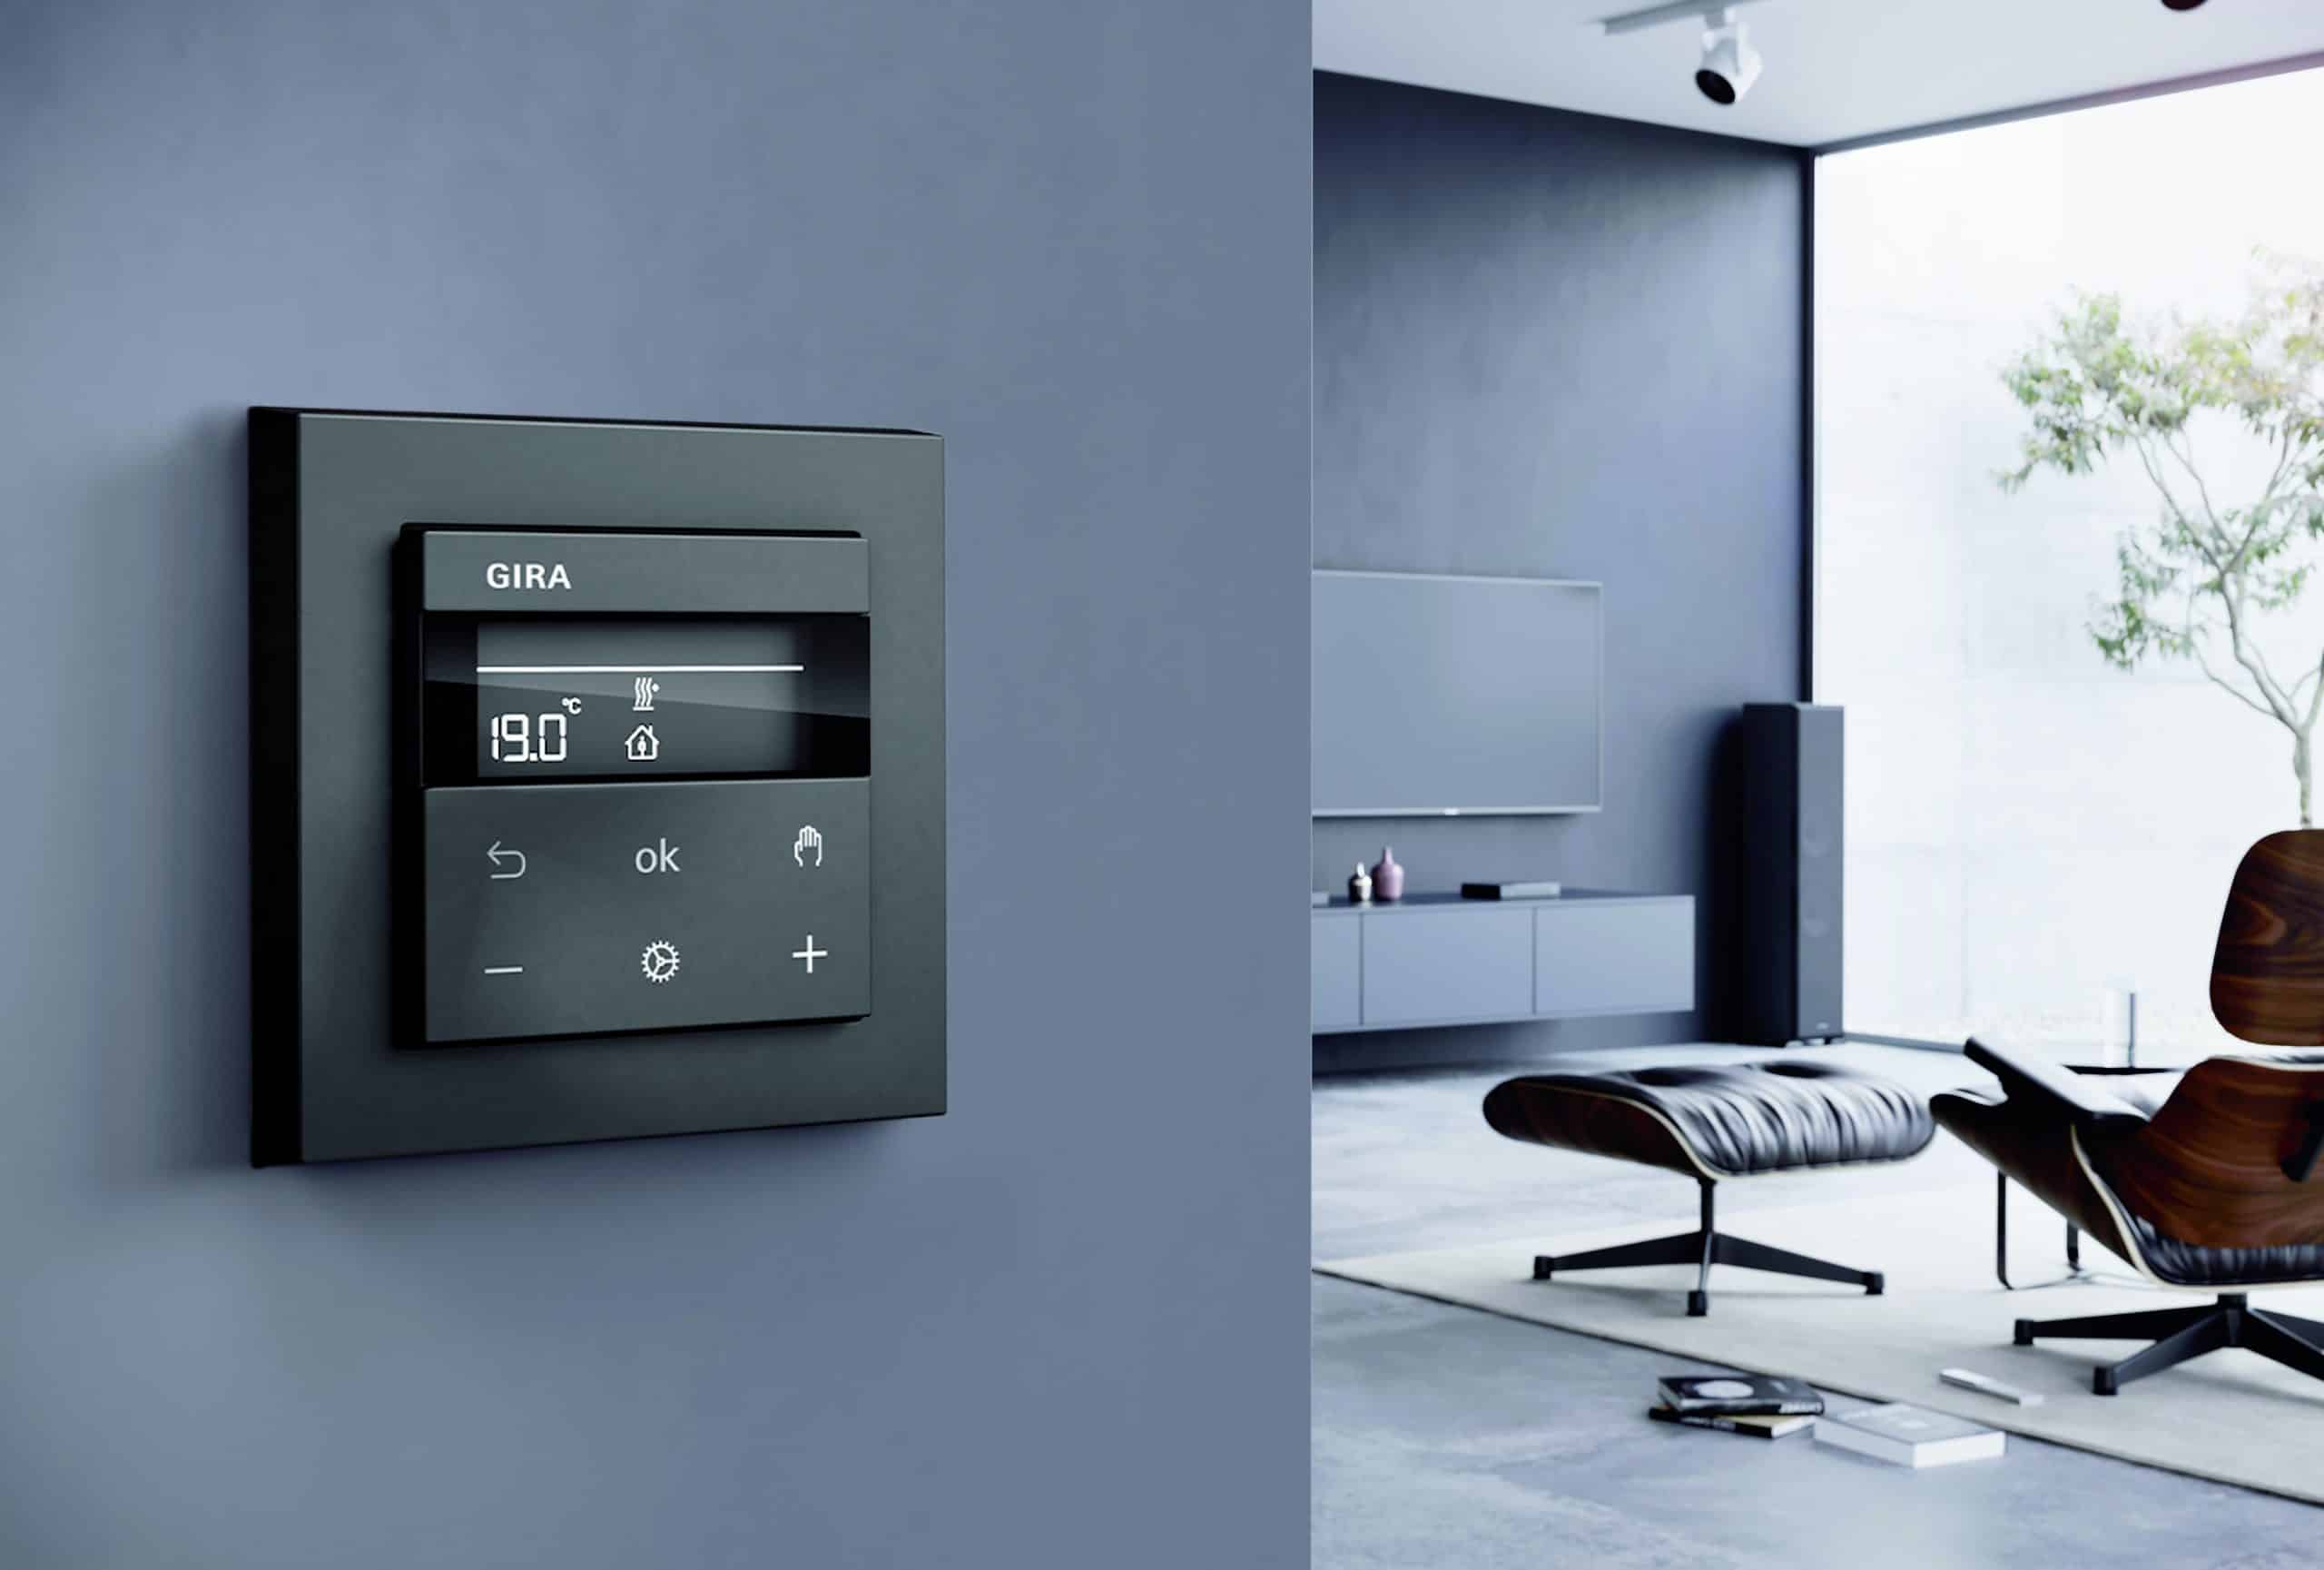 Gira zeigt ein Wohnzimmer mit formshöner Smart Home Temperaturregelung.